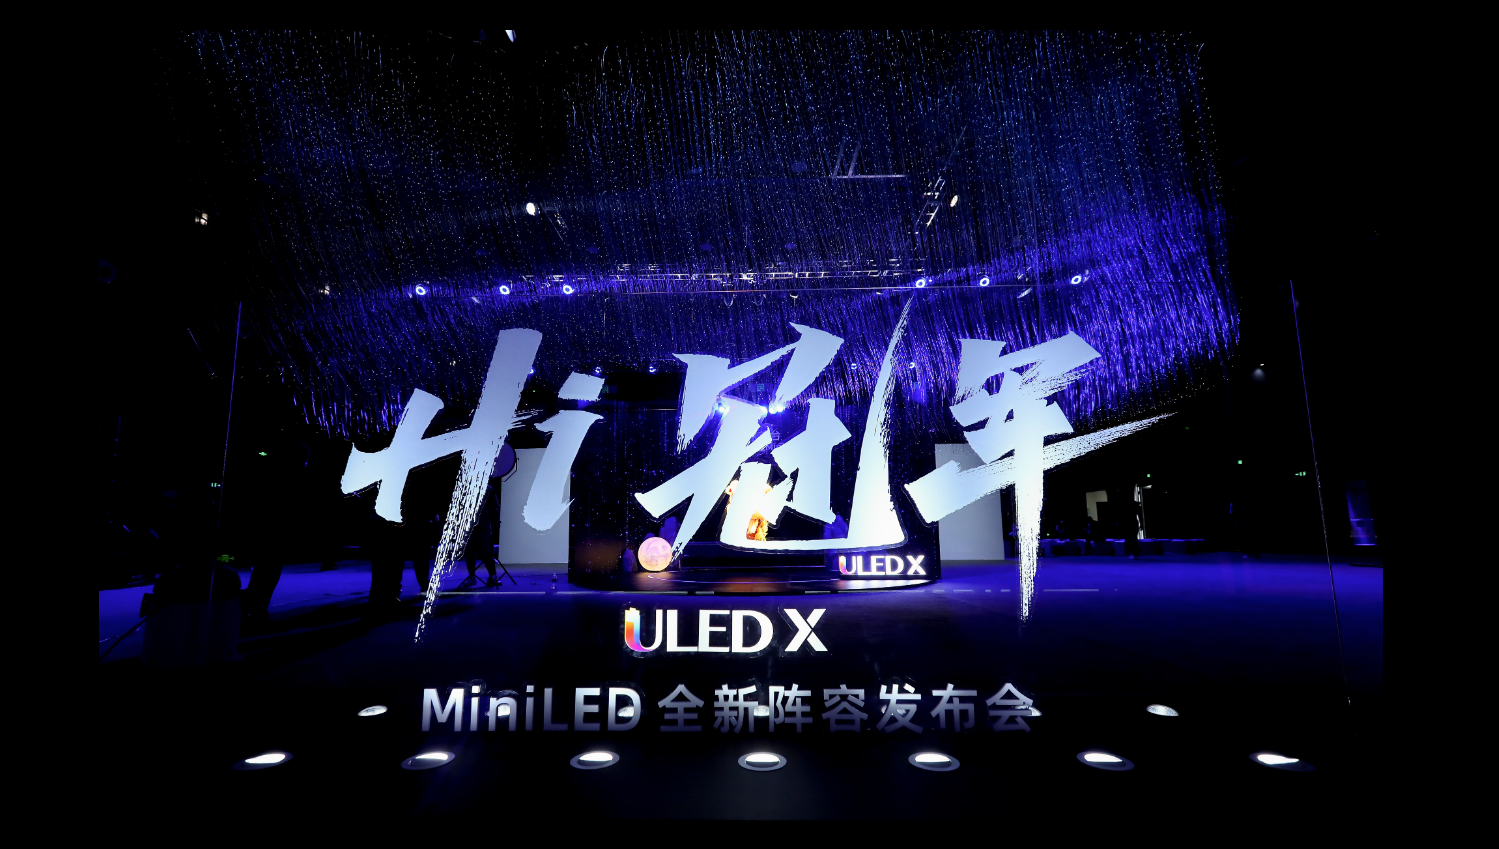 9月26日，海信视像举行MiniLED 全新阵容发布会，在这场主题为“Hi冠军”的发布会上，海信推出ULED X MiniLED全新产品矩阵。